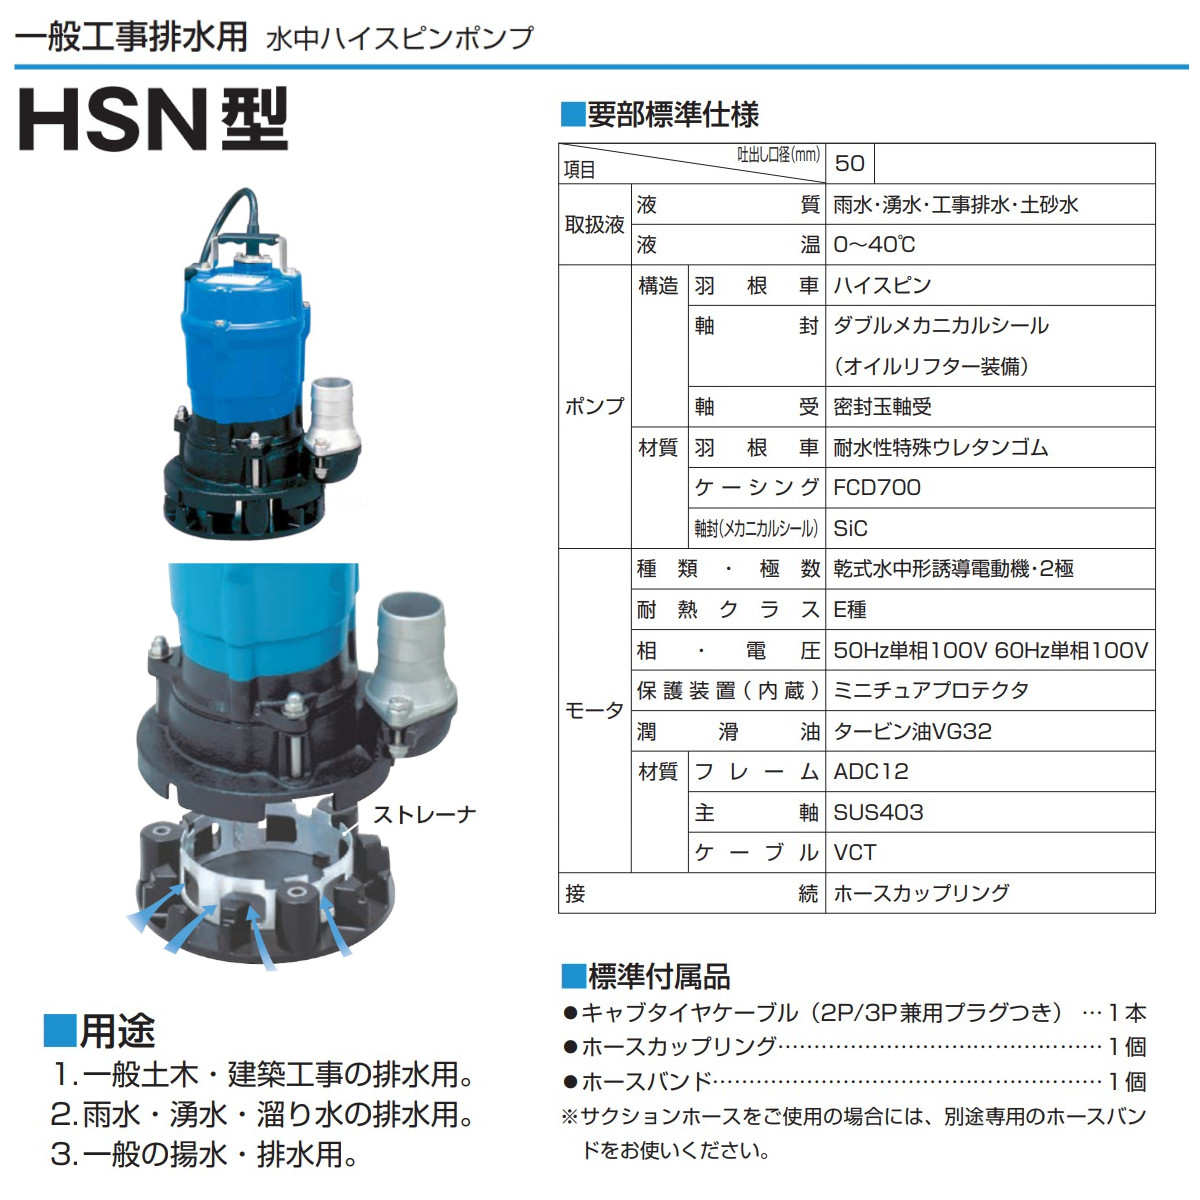 ツルミ 水中ポンプ HSN2.4S 軟弱地 山林 単相100V 50Hz/60Hz 一般土木